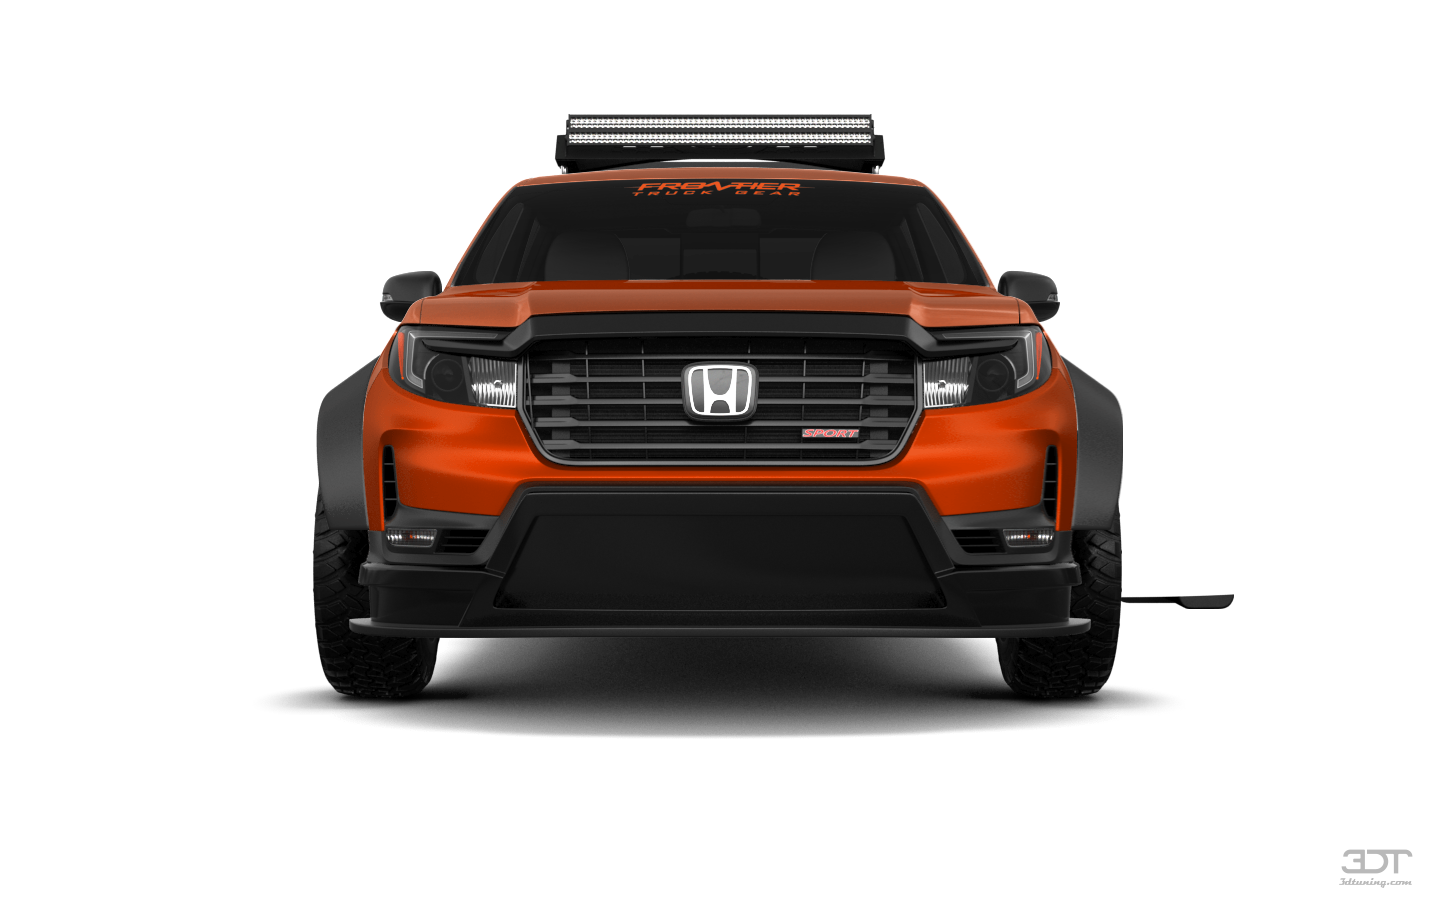 Honda Ridgeline 4 Door pickup truck 2021 tuning